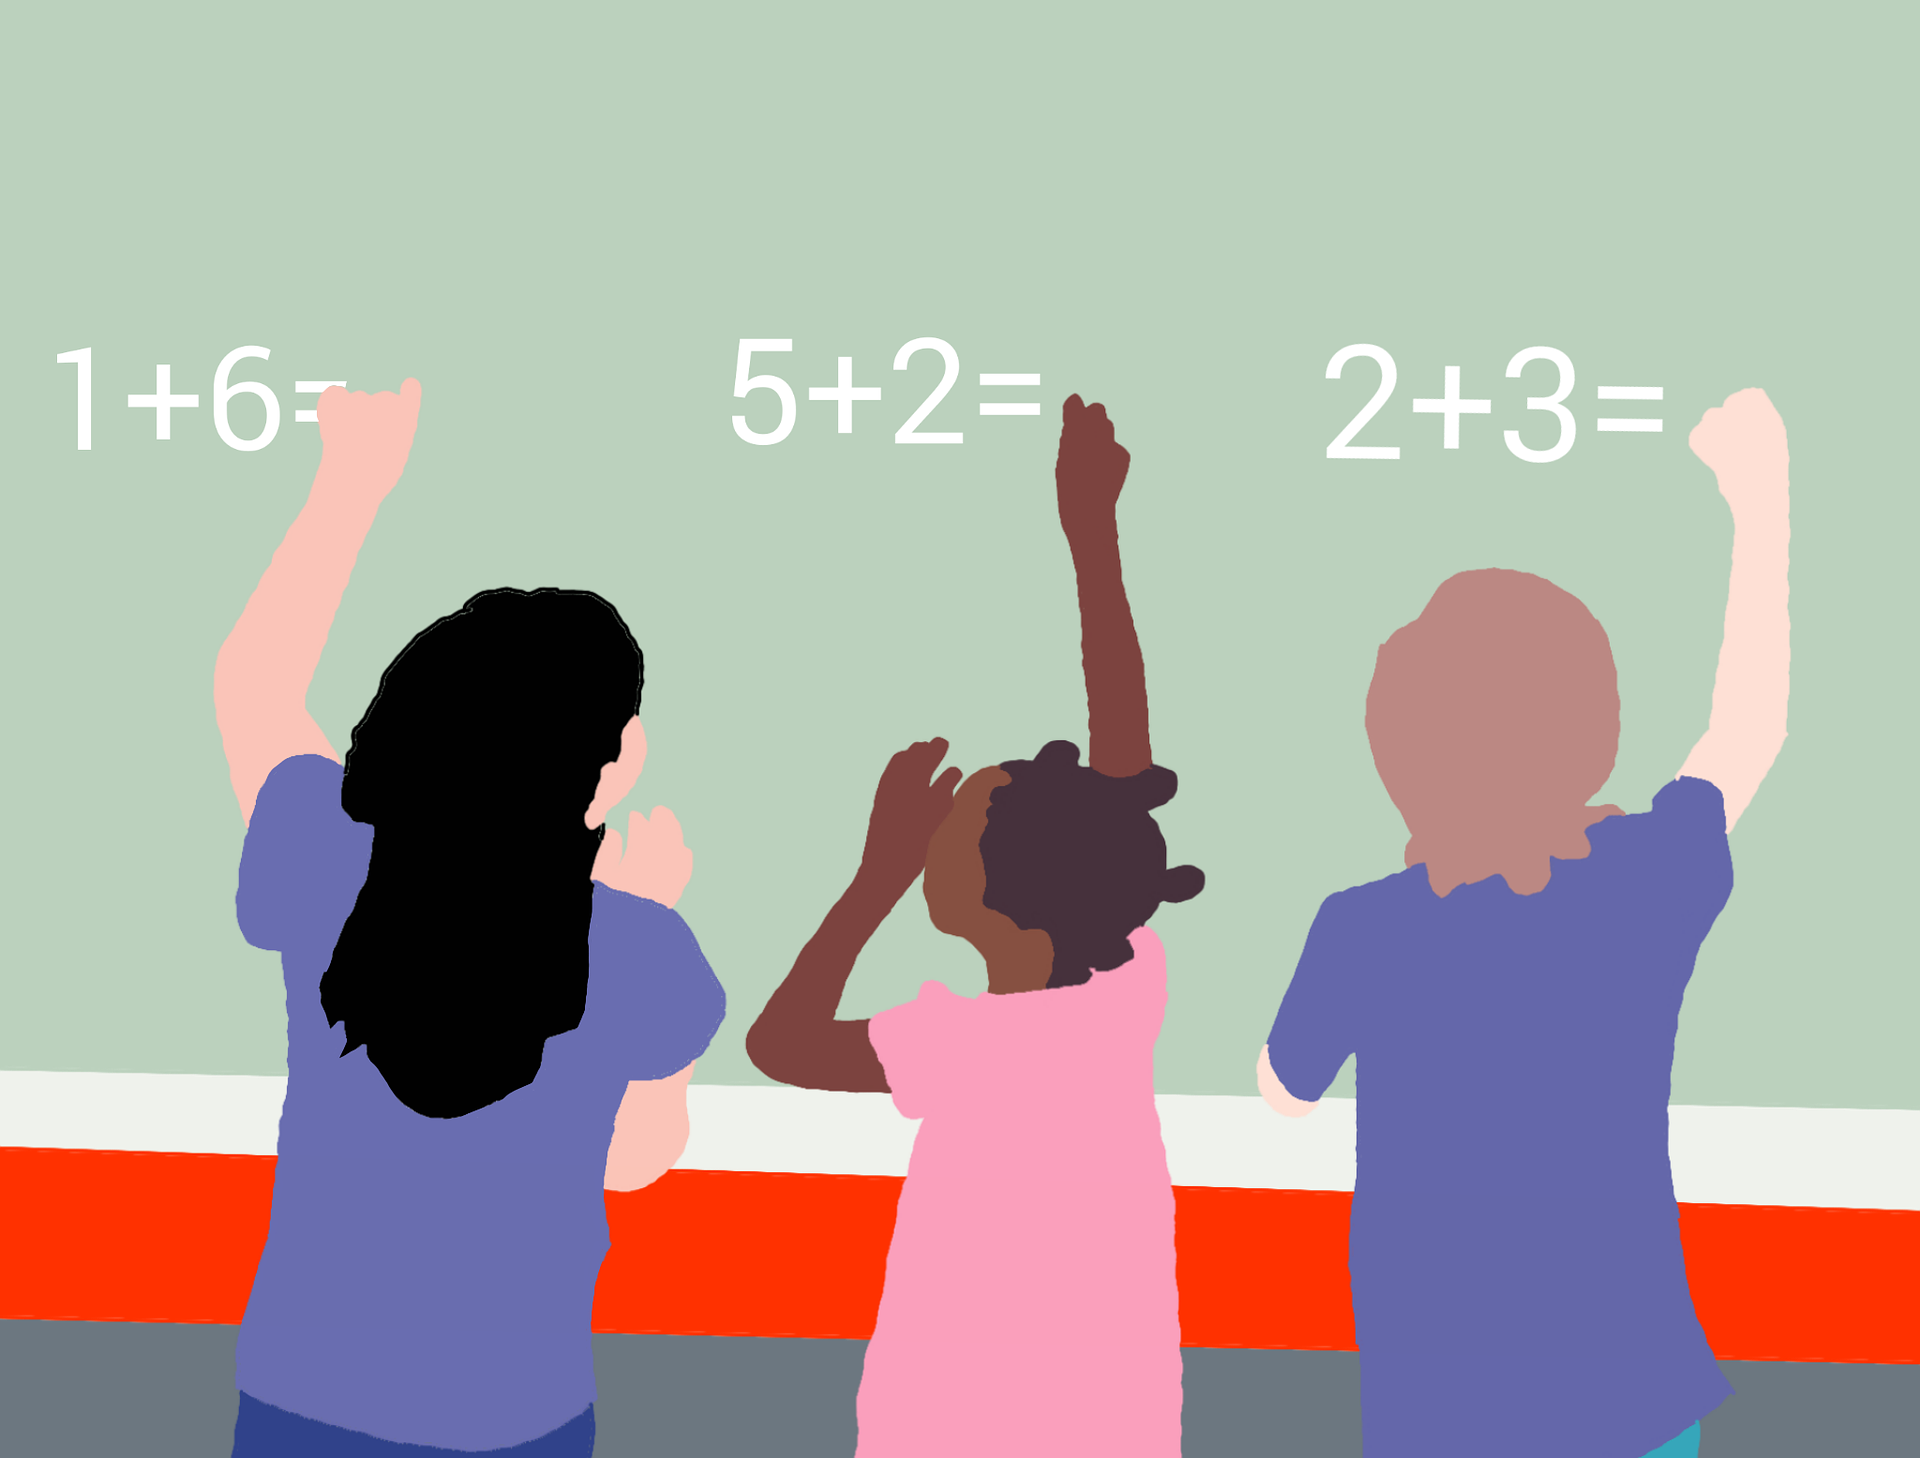 działania quiz dla dzieci matematyczny test wiedzy matematyka nauka działania proste łatwe liczby cyfry uzupełnij proste działania